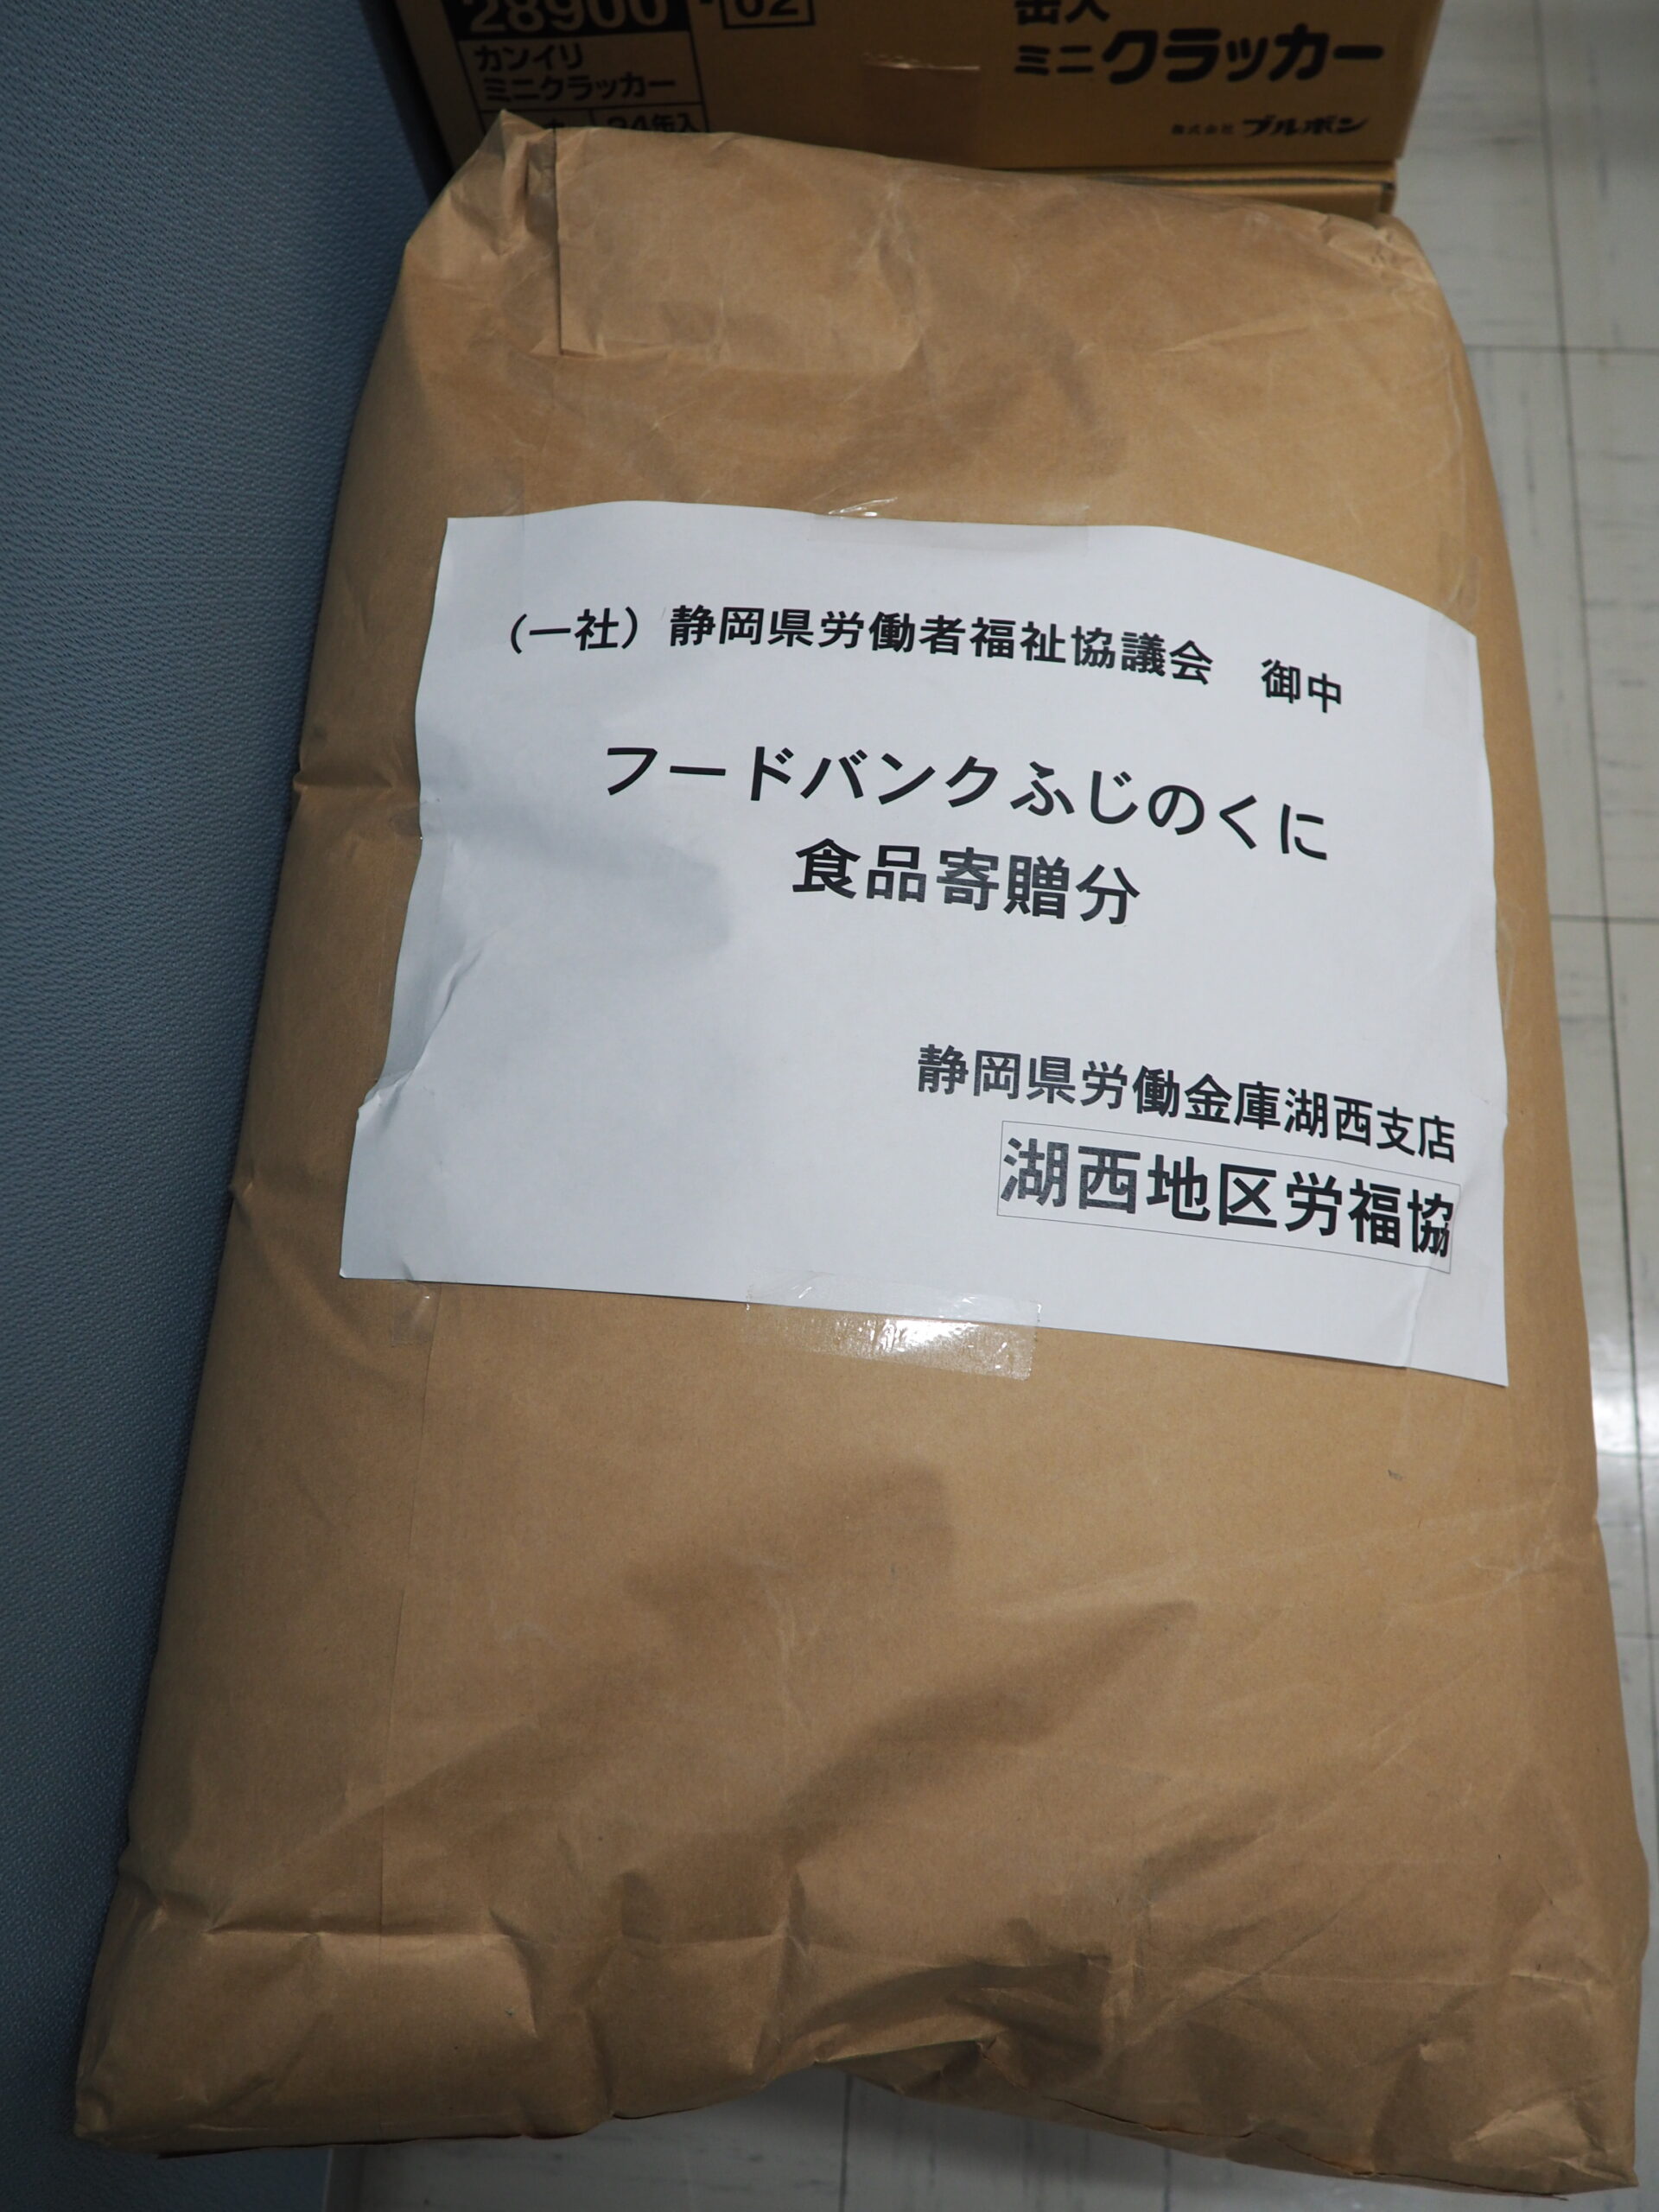 湖西地区労福協様・全矢崎労働組合鷲津支部様から食品を提供いただきました。